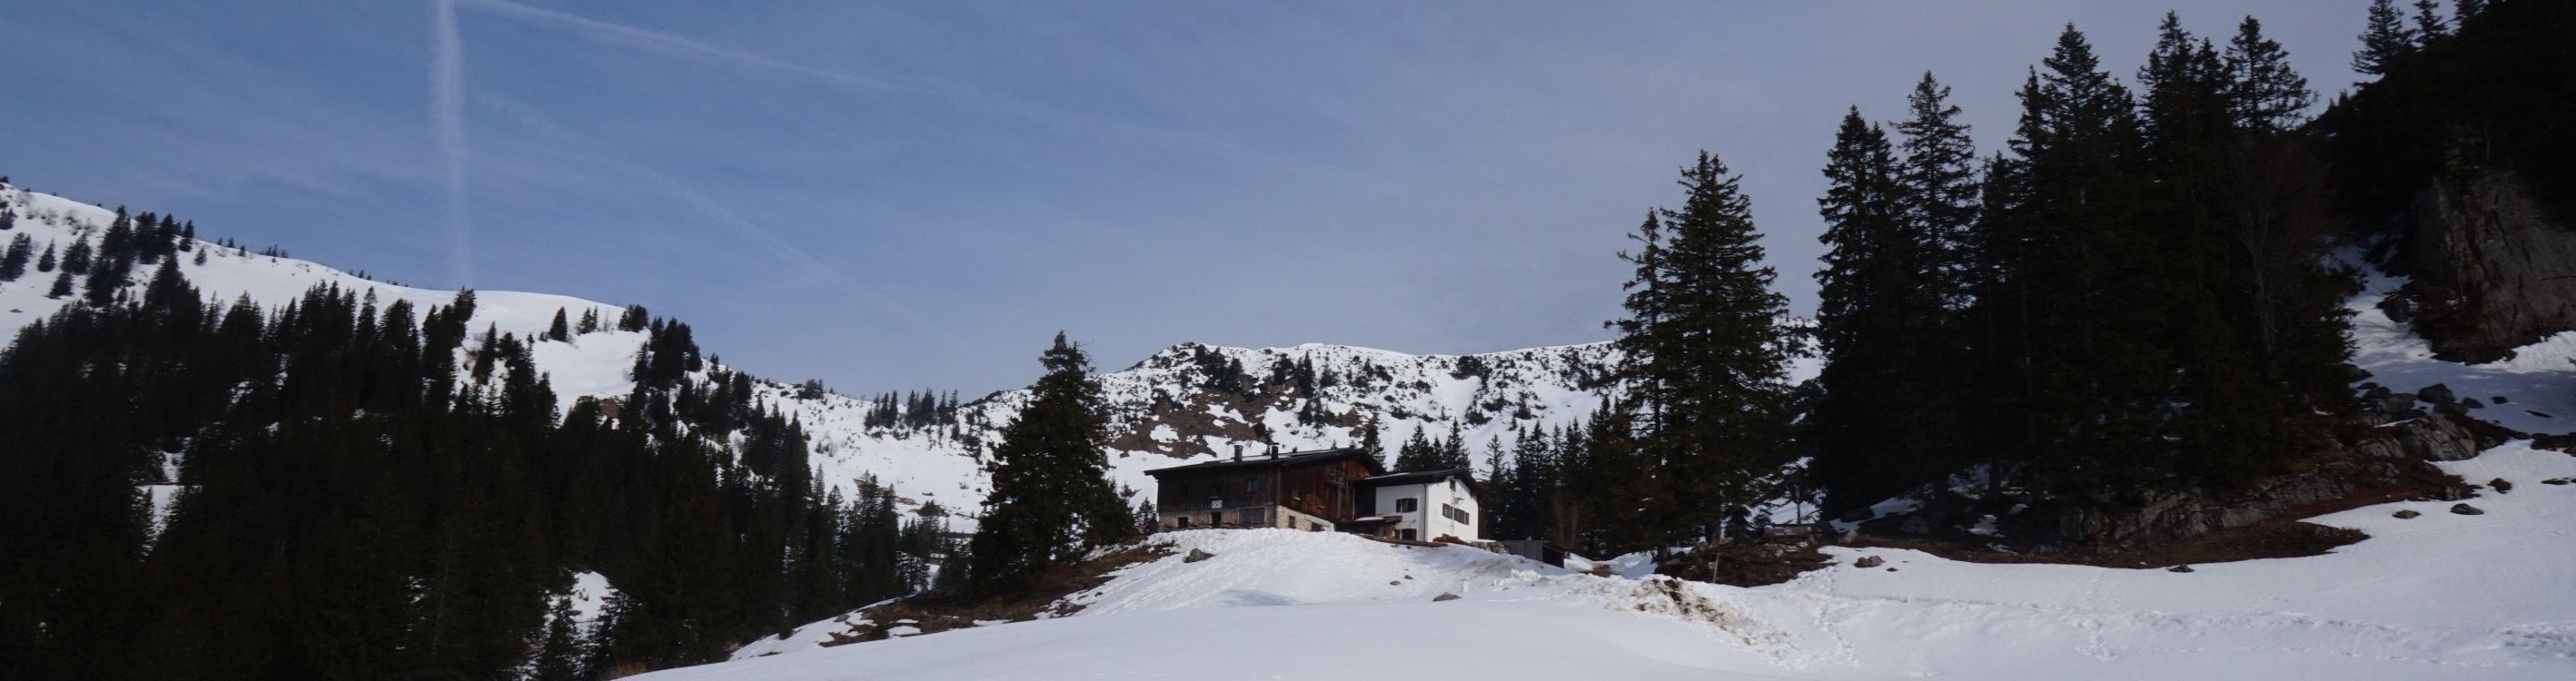 Die Priener Hütte in den Chiemgauer Alpen.